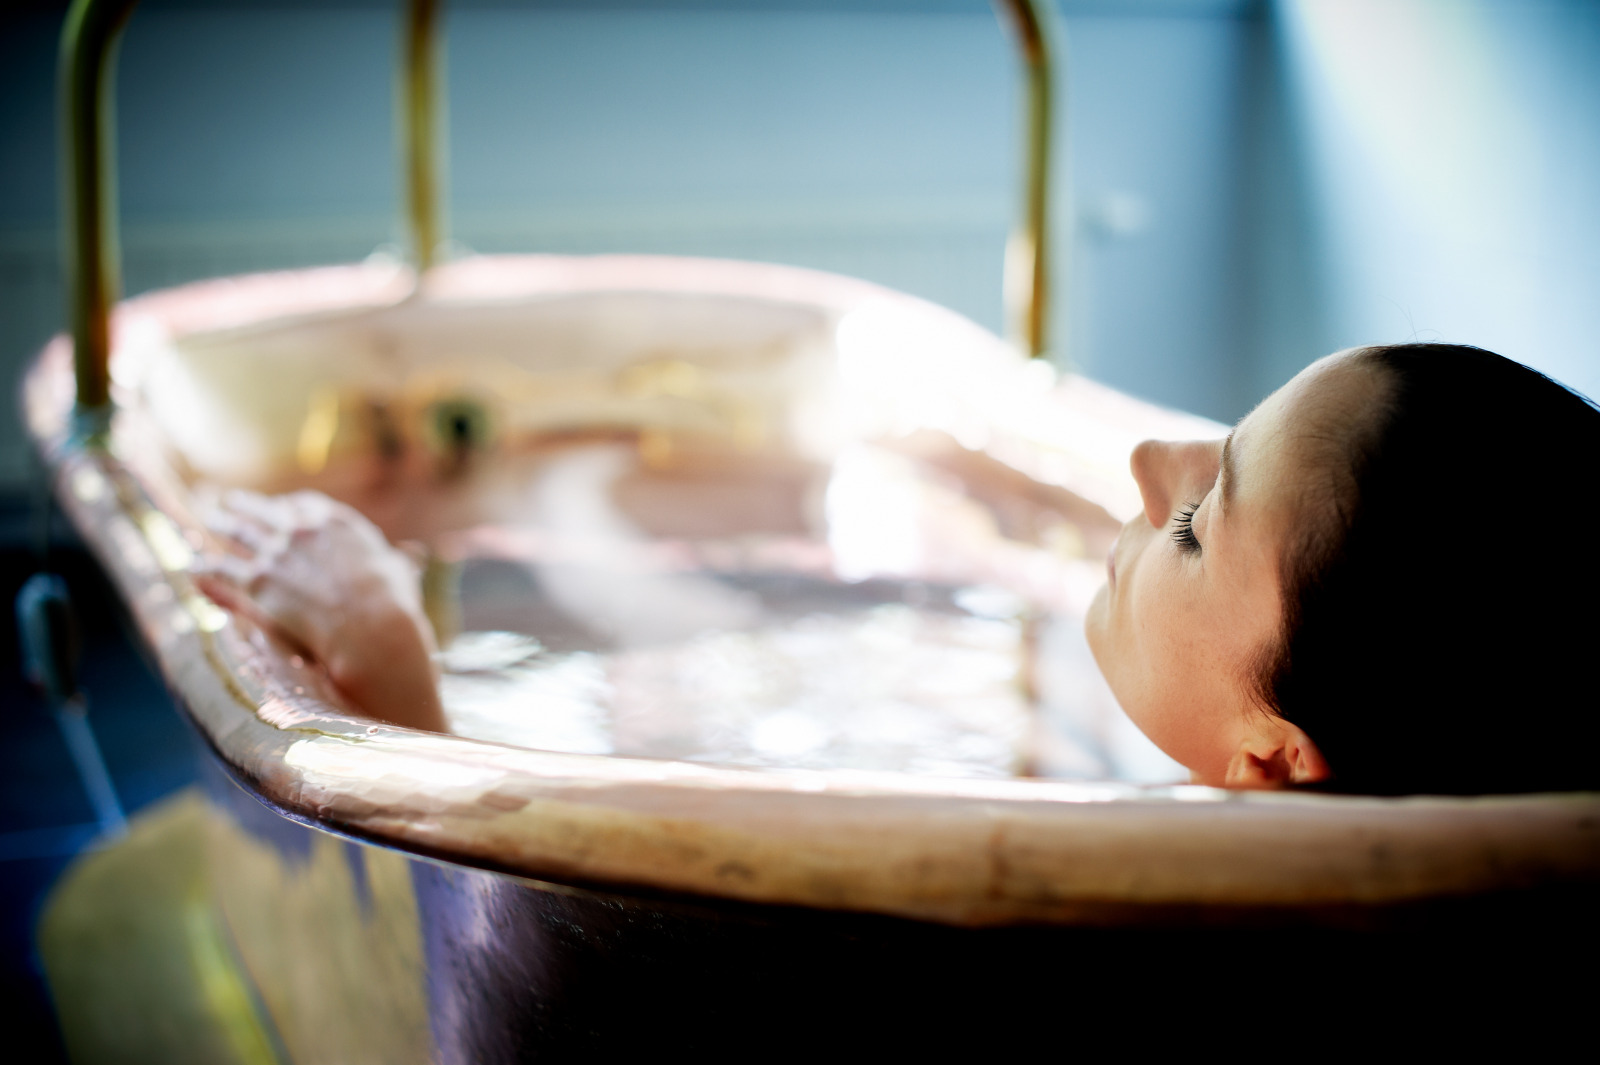 Woman taking a bath in a copper bathtub